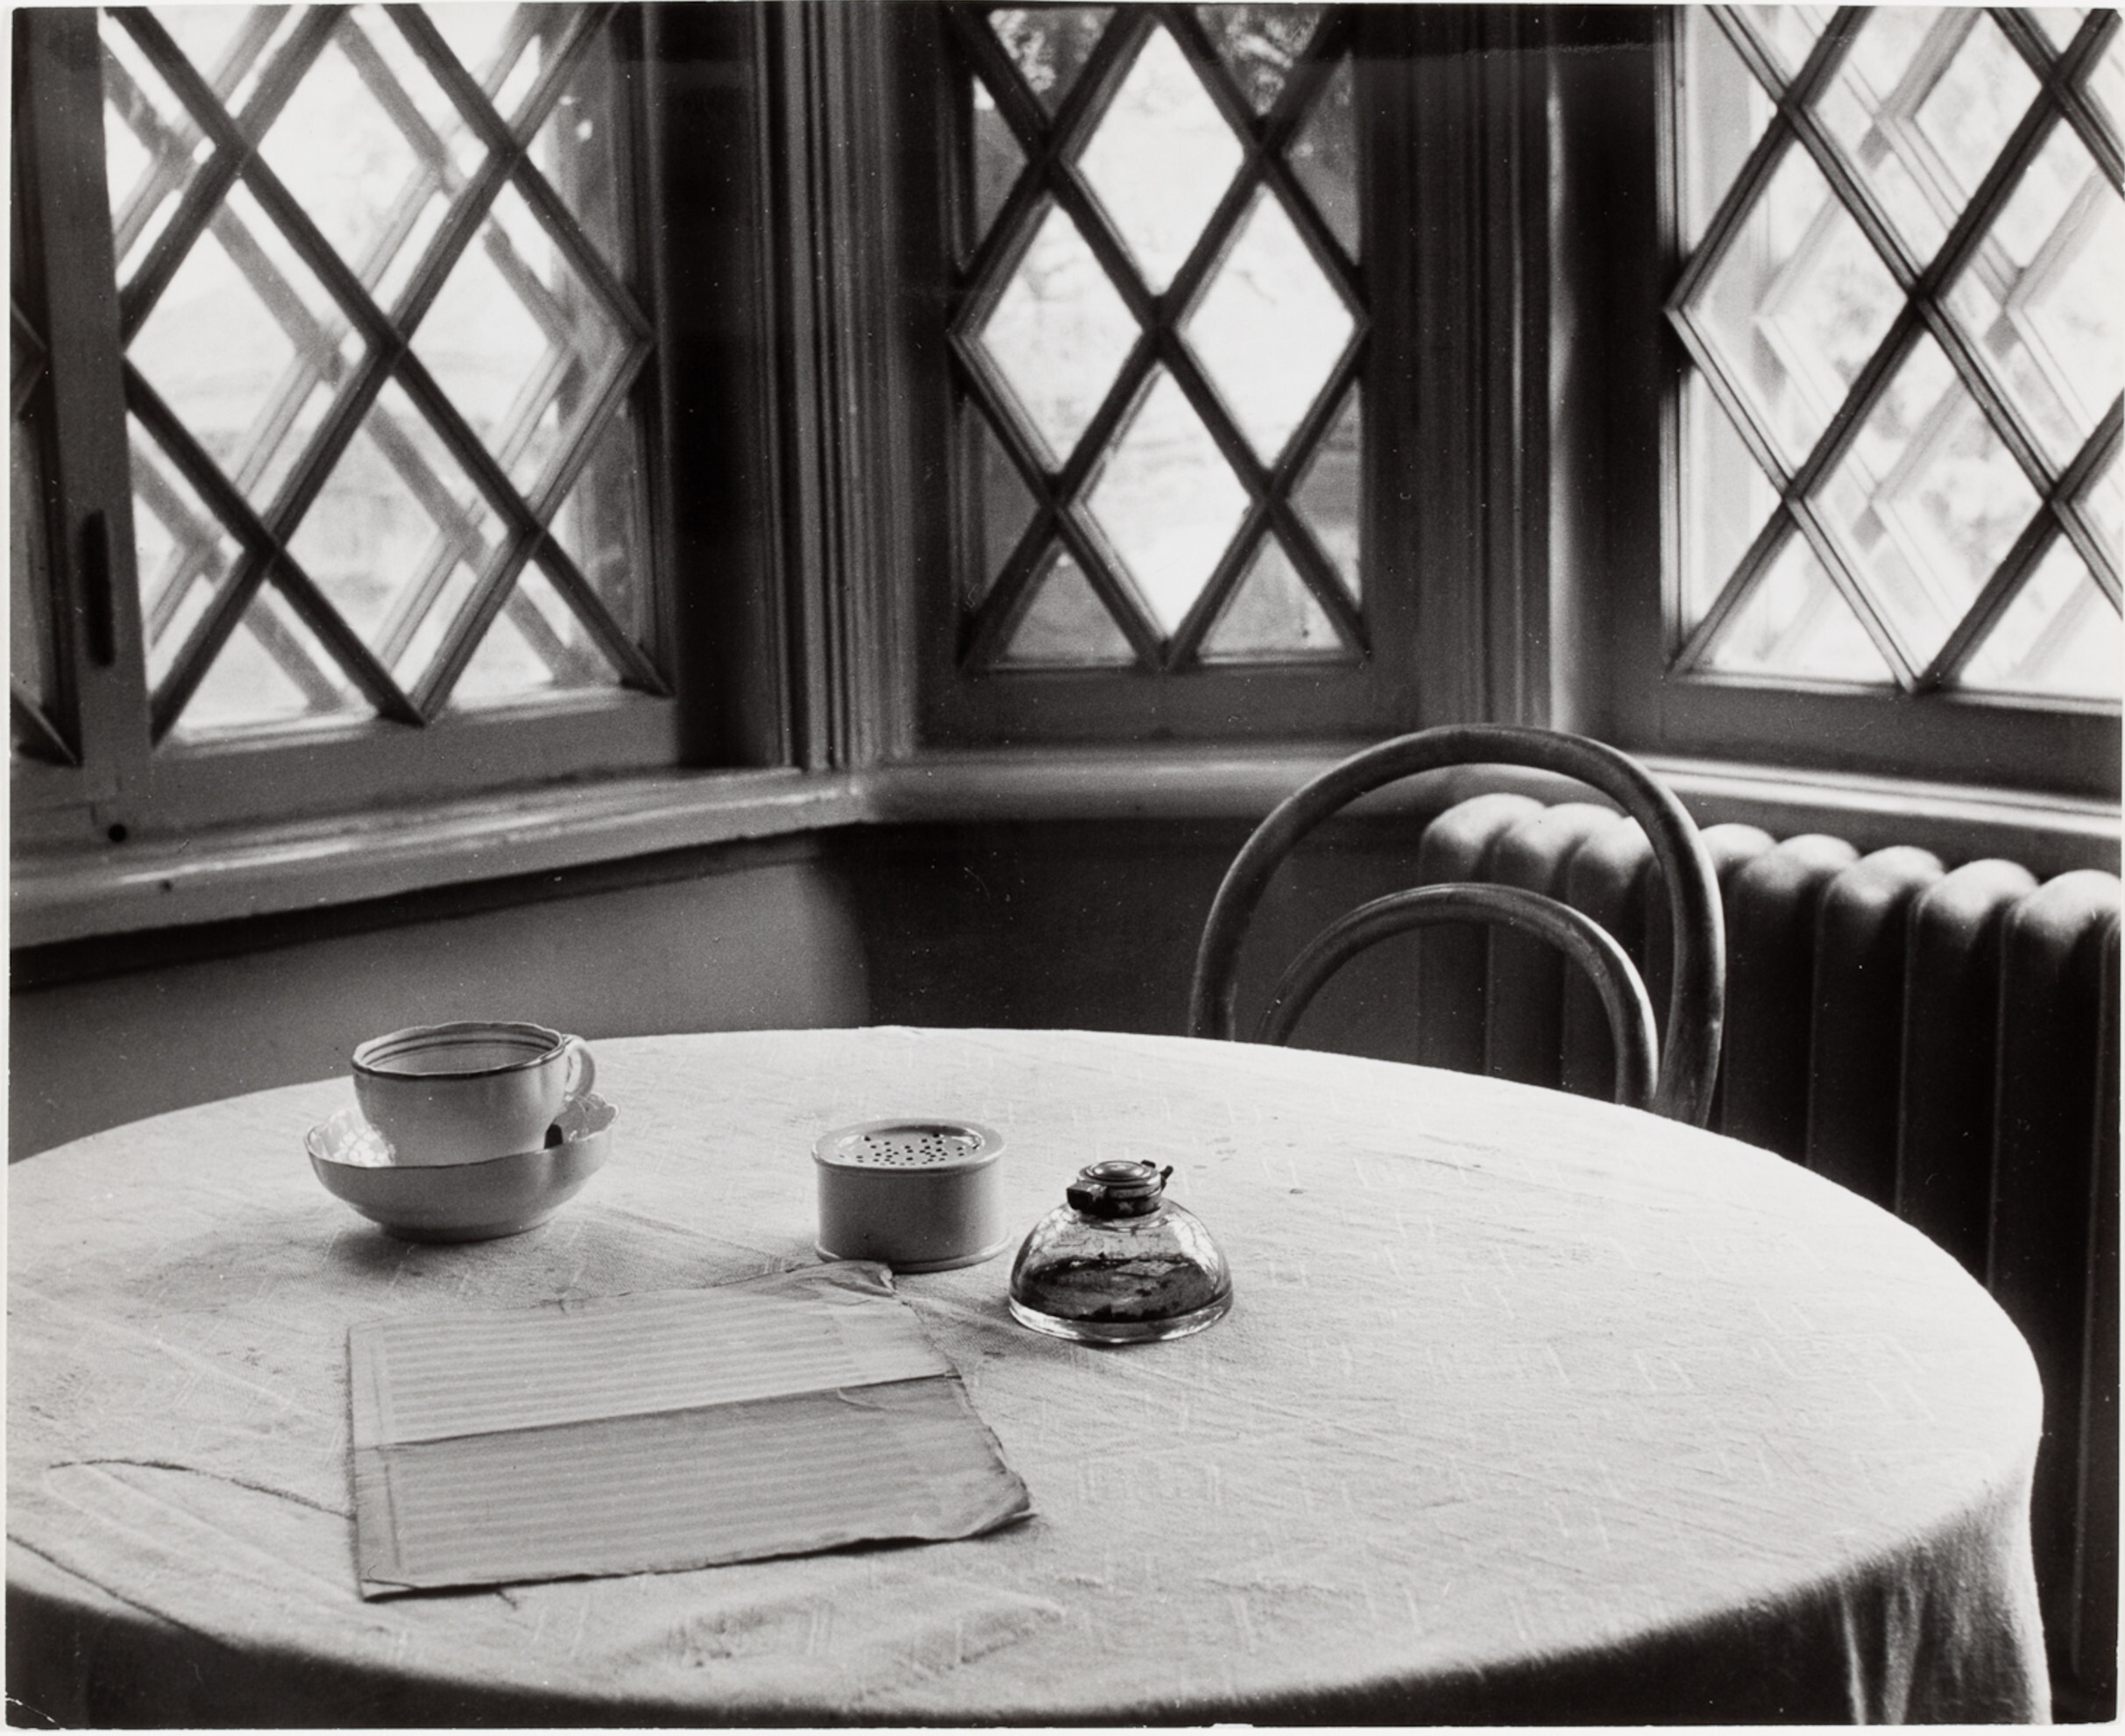 Сервировка стола в Доме Чайковского, Клин, СССР, 1947 год. Фотограф Роберт Капа